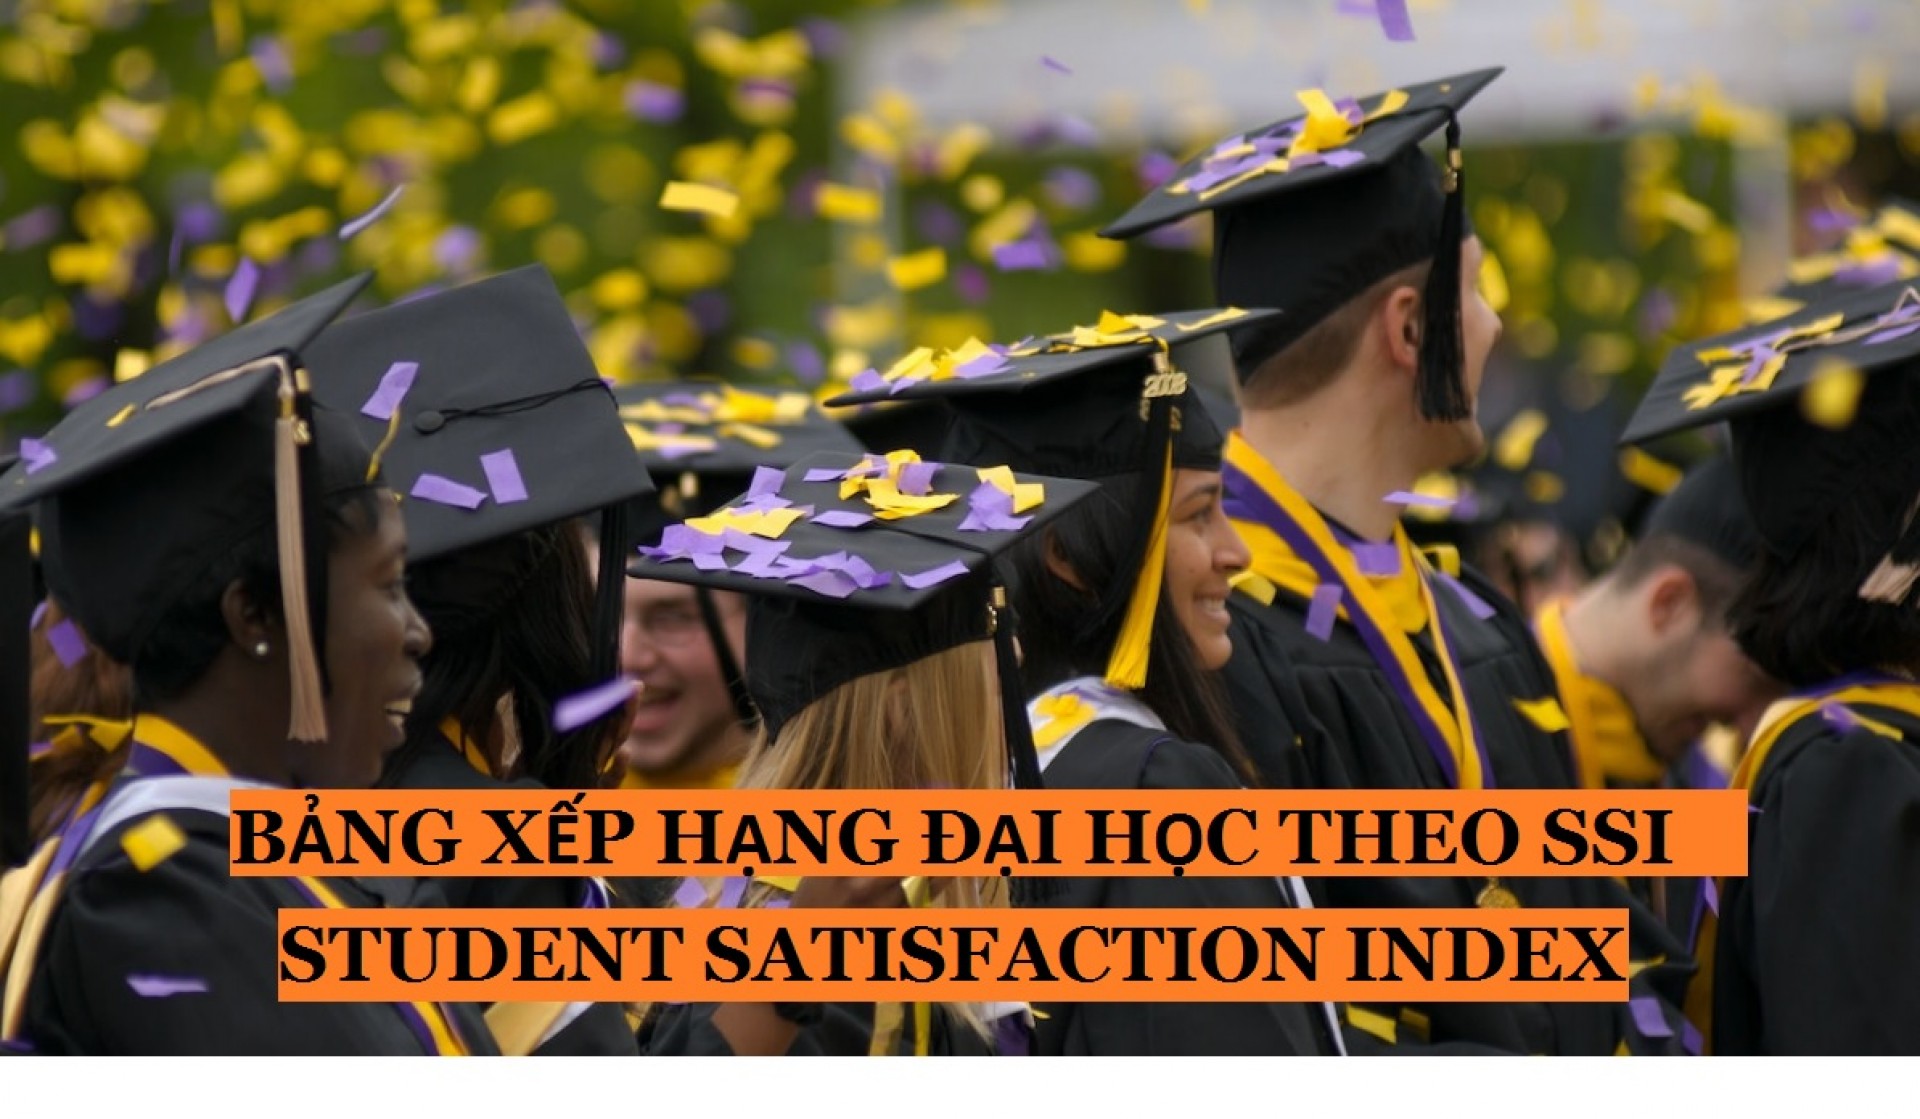 Bảng xếp hạng đại học theo chỉ số hài lòng sinh viên SSI 2016 (Student Satisfaction Index)